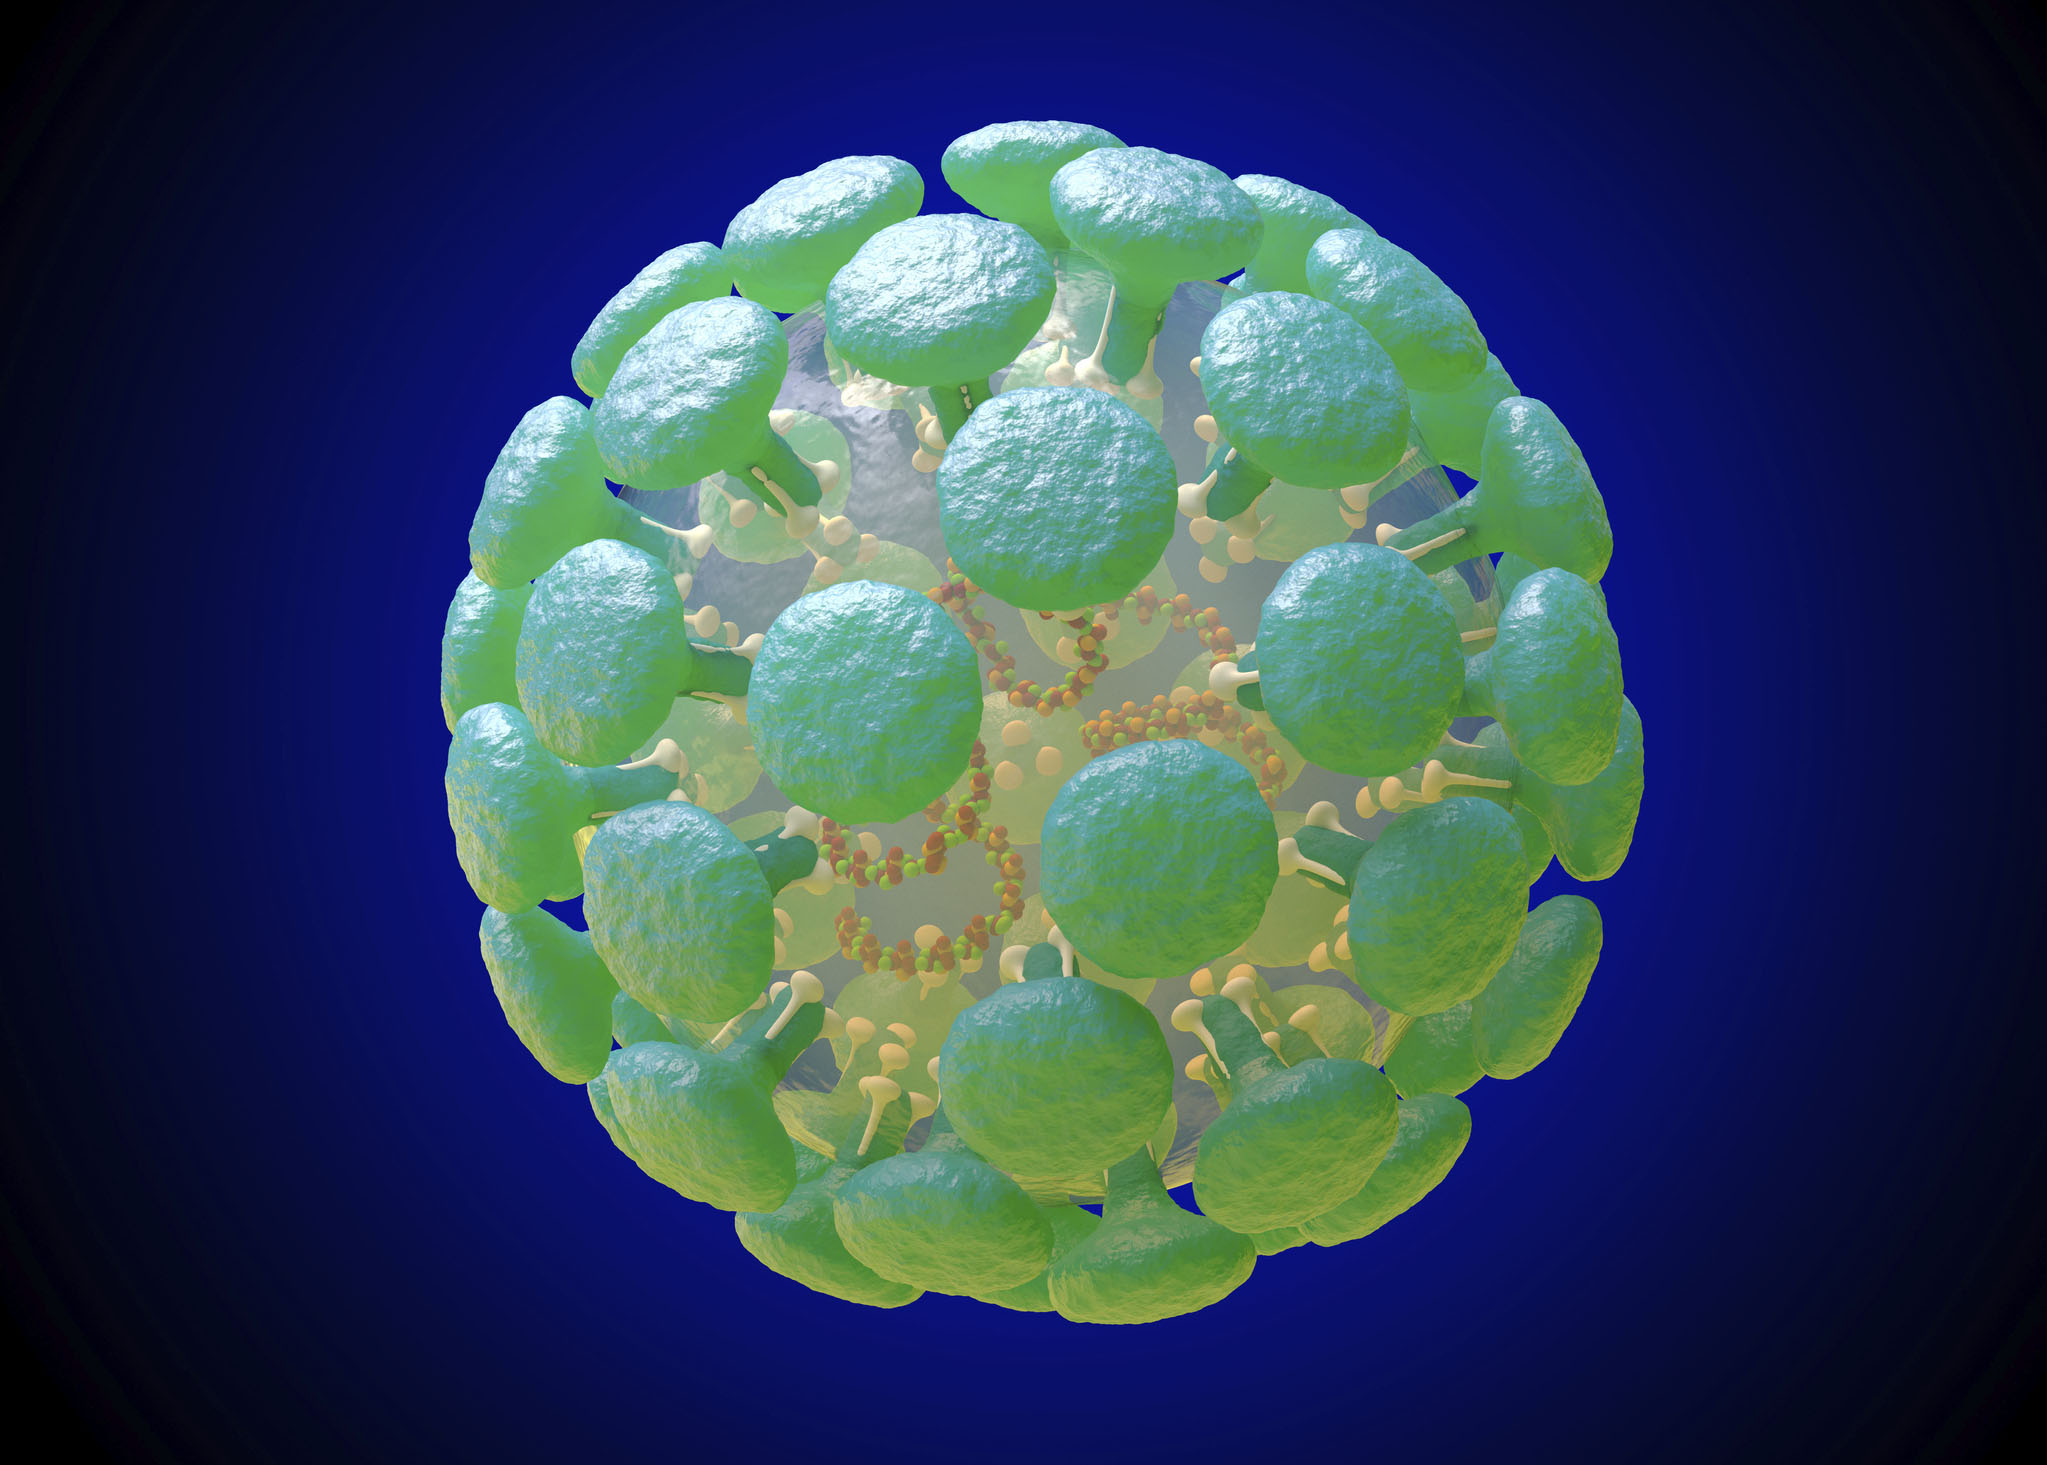 An illustration of a coronavirus